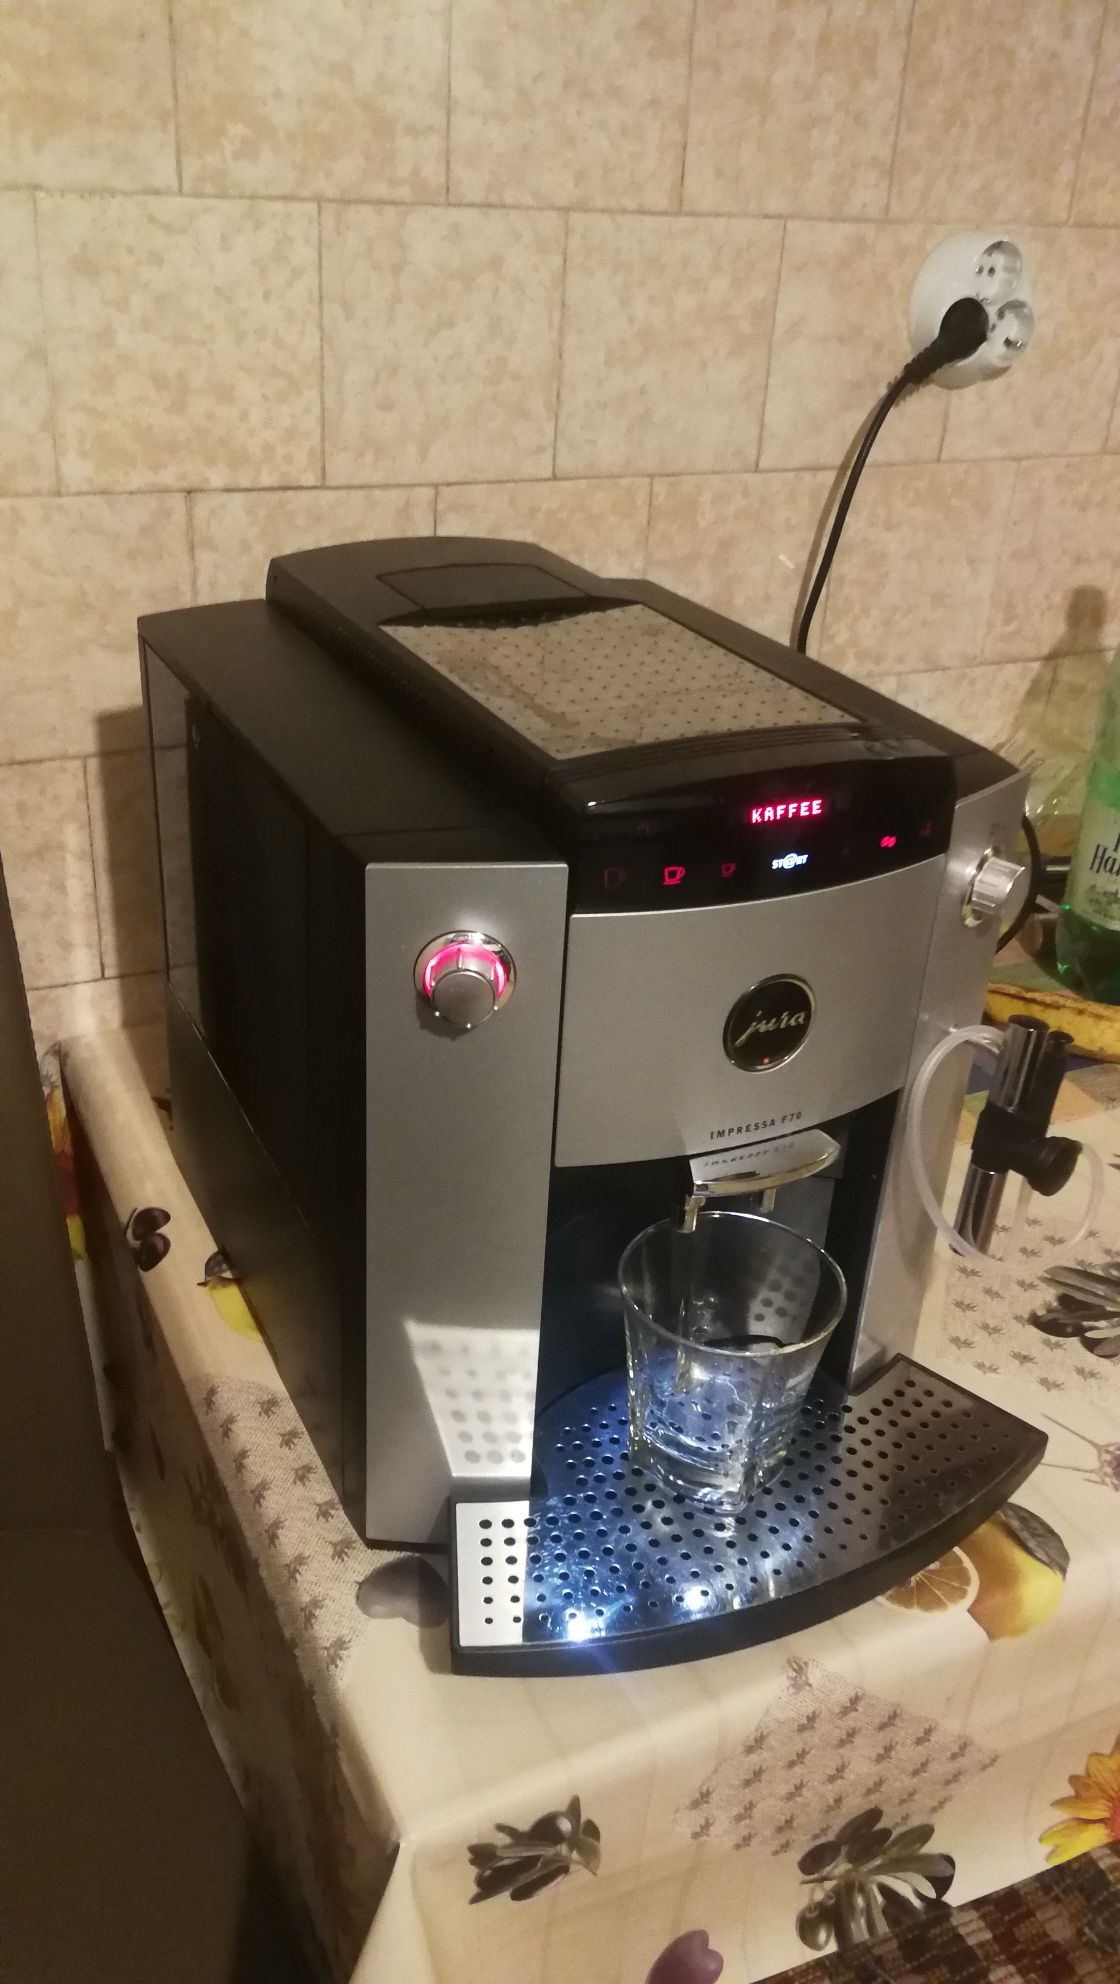 Expresor,Espressor cafea Jura F70 cu funcție spumare lapte